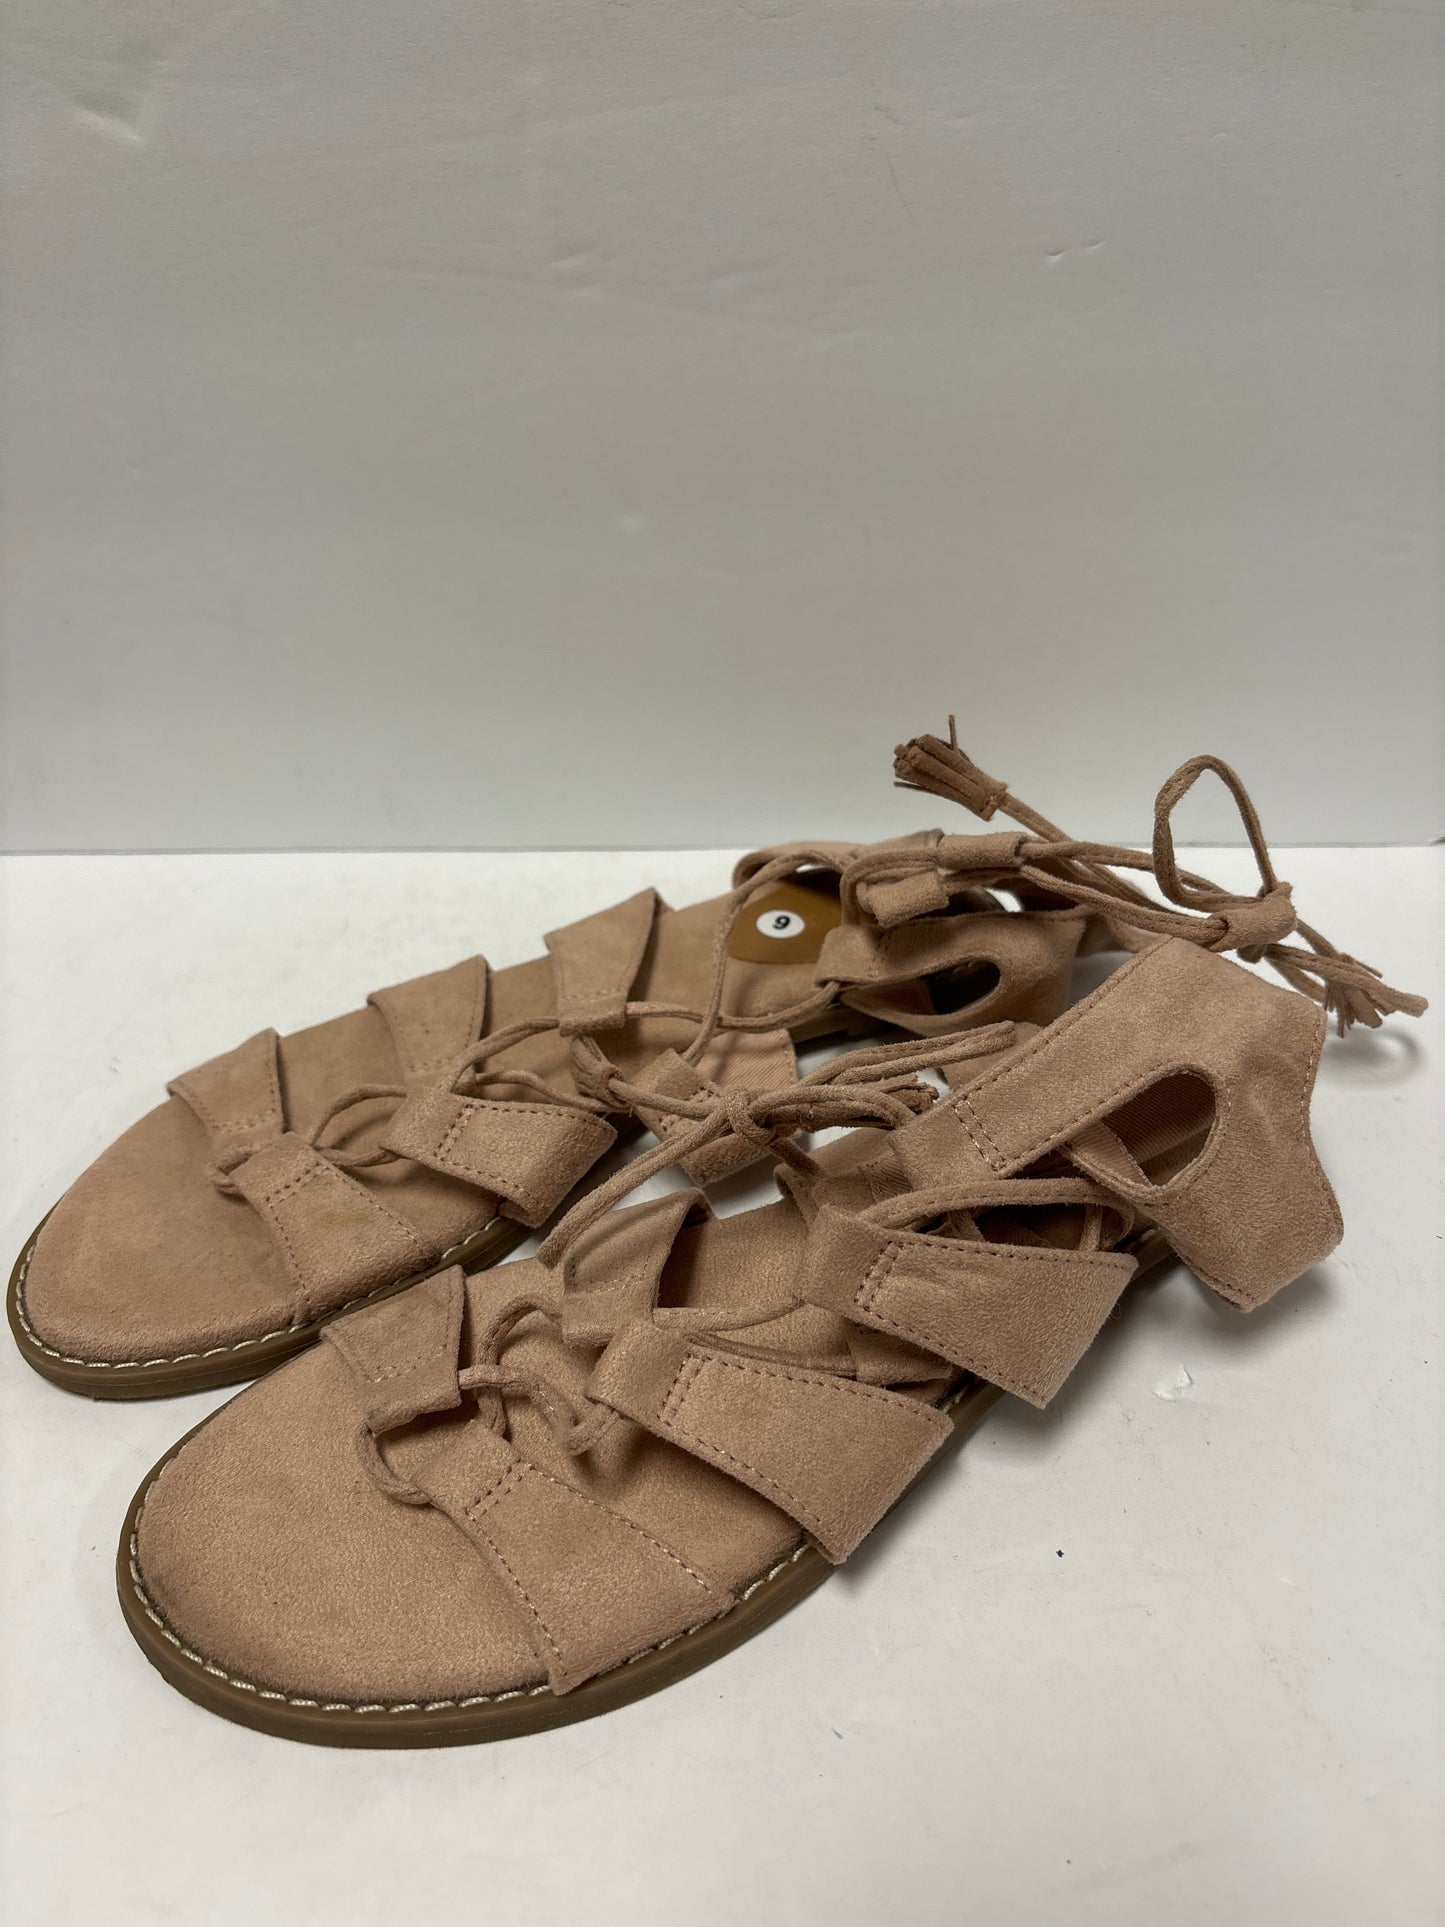 Pink Sandals Flip Flops Old Navy, Size 9